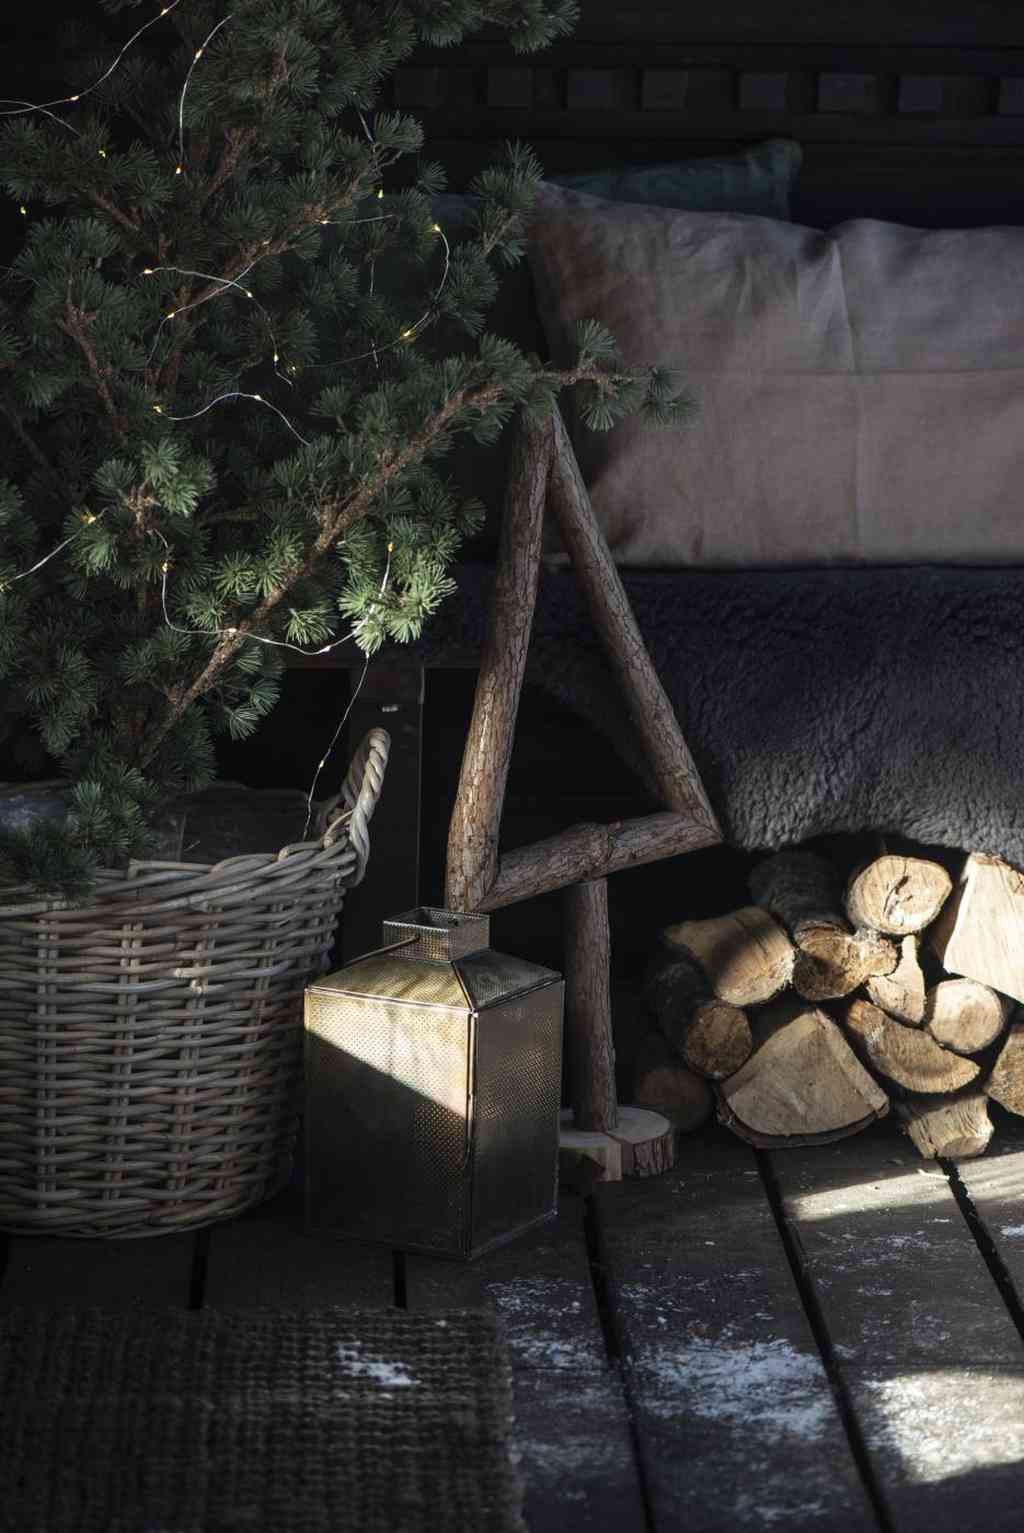 ZEDER Baum groß 125x60 cm Weihnachtsbaum ☆ Kunstpflanze im Jutesack ☆ IB LAURSEN